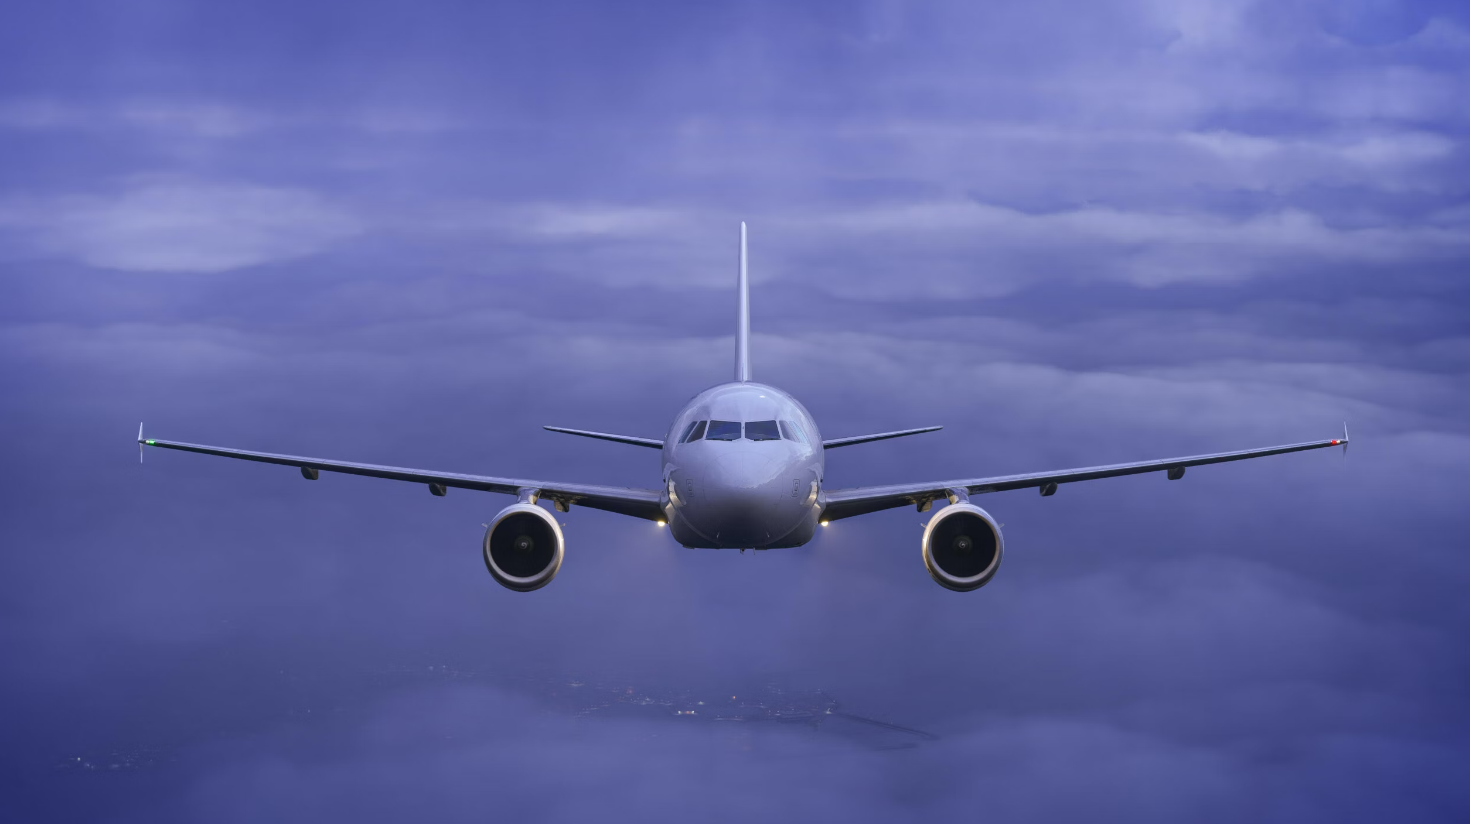 IAE-motorupdate voor Fenix A320 nadert release